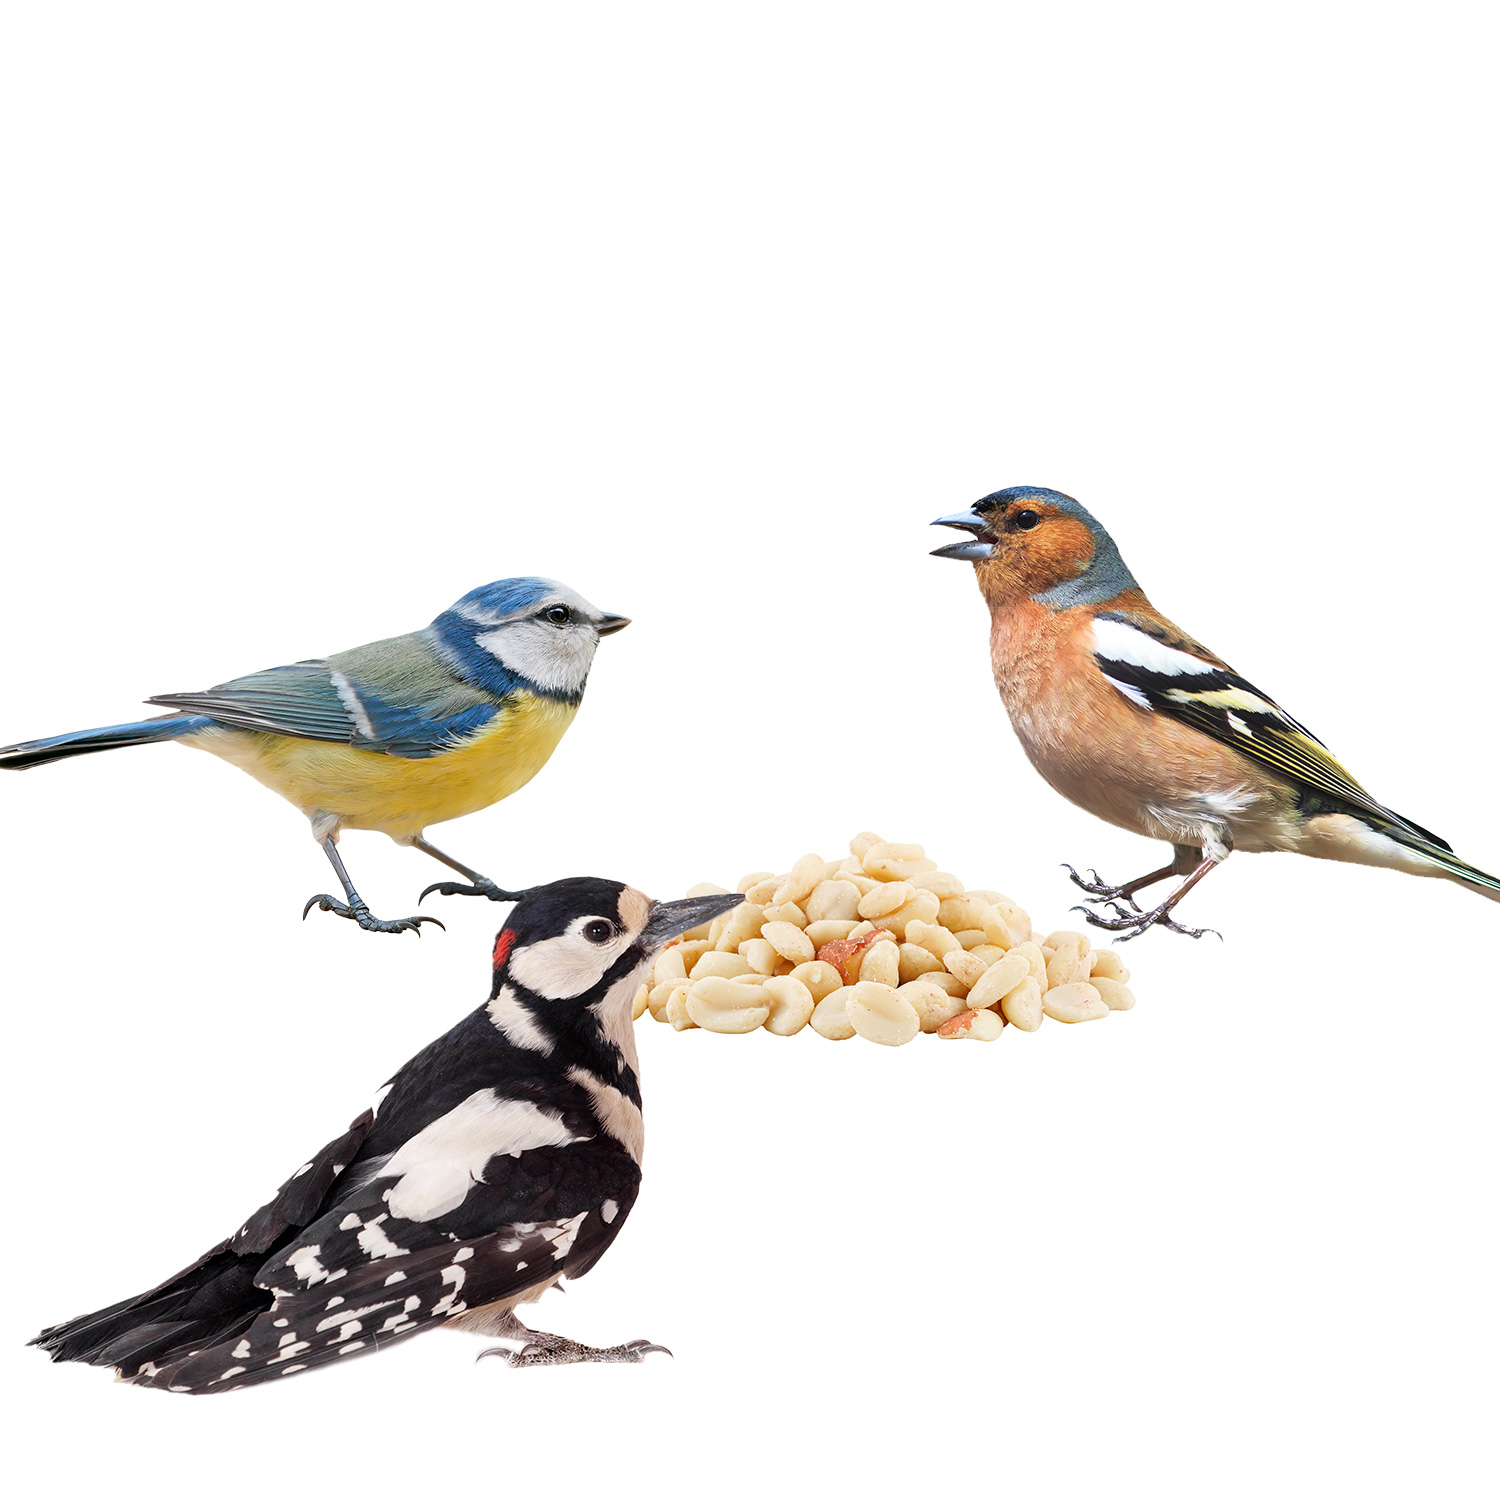 Drei Vögel fressen Erdnüsse